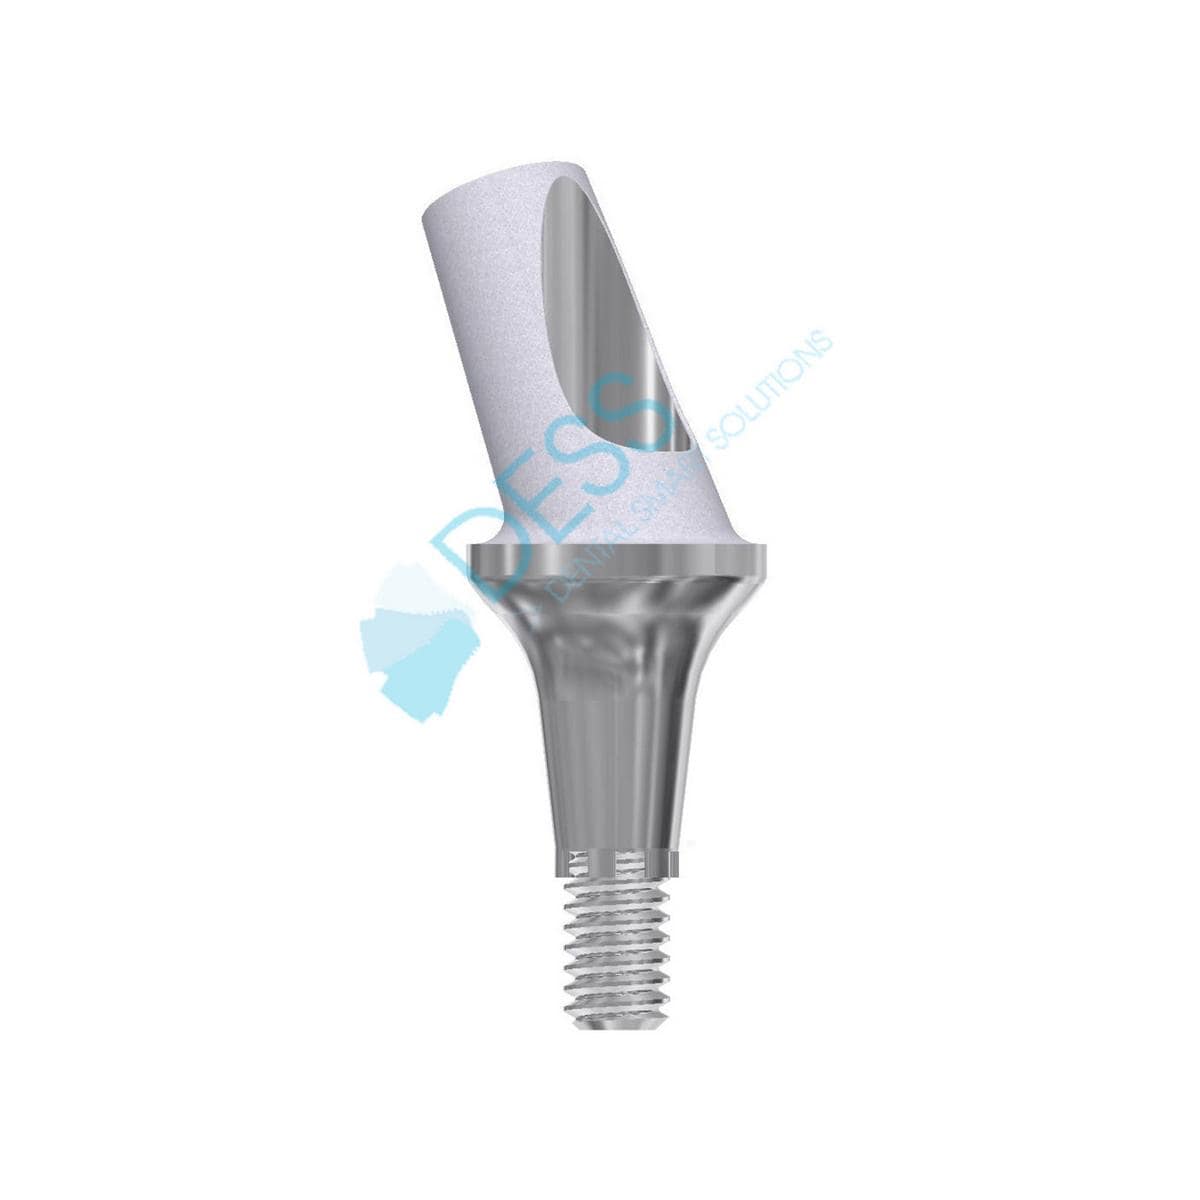 Titanabutment - kompatibel mit Dentsply Ankylos® - Höhe 3,0 mm, 25° gewinkelt, mit Rotationsschutz